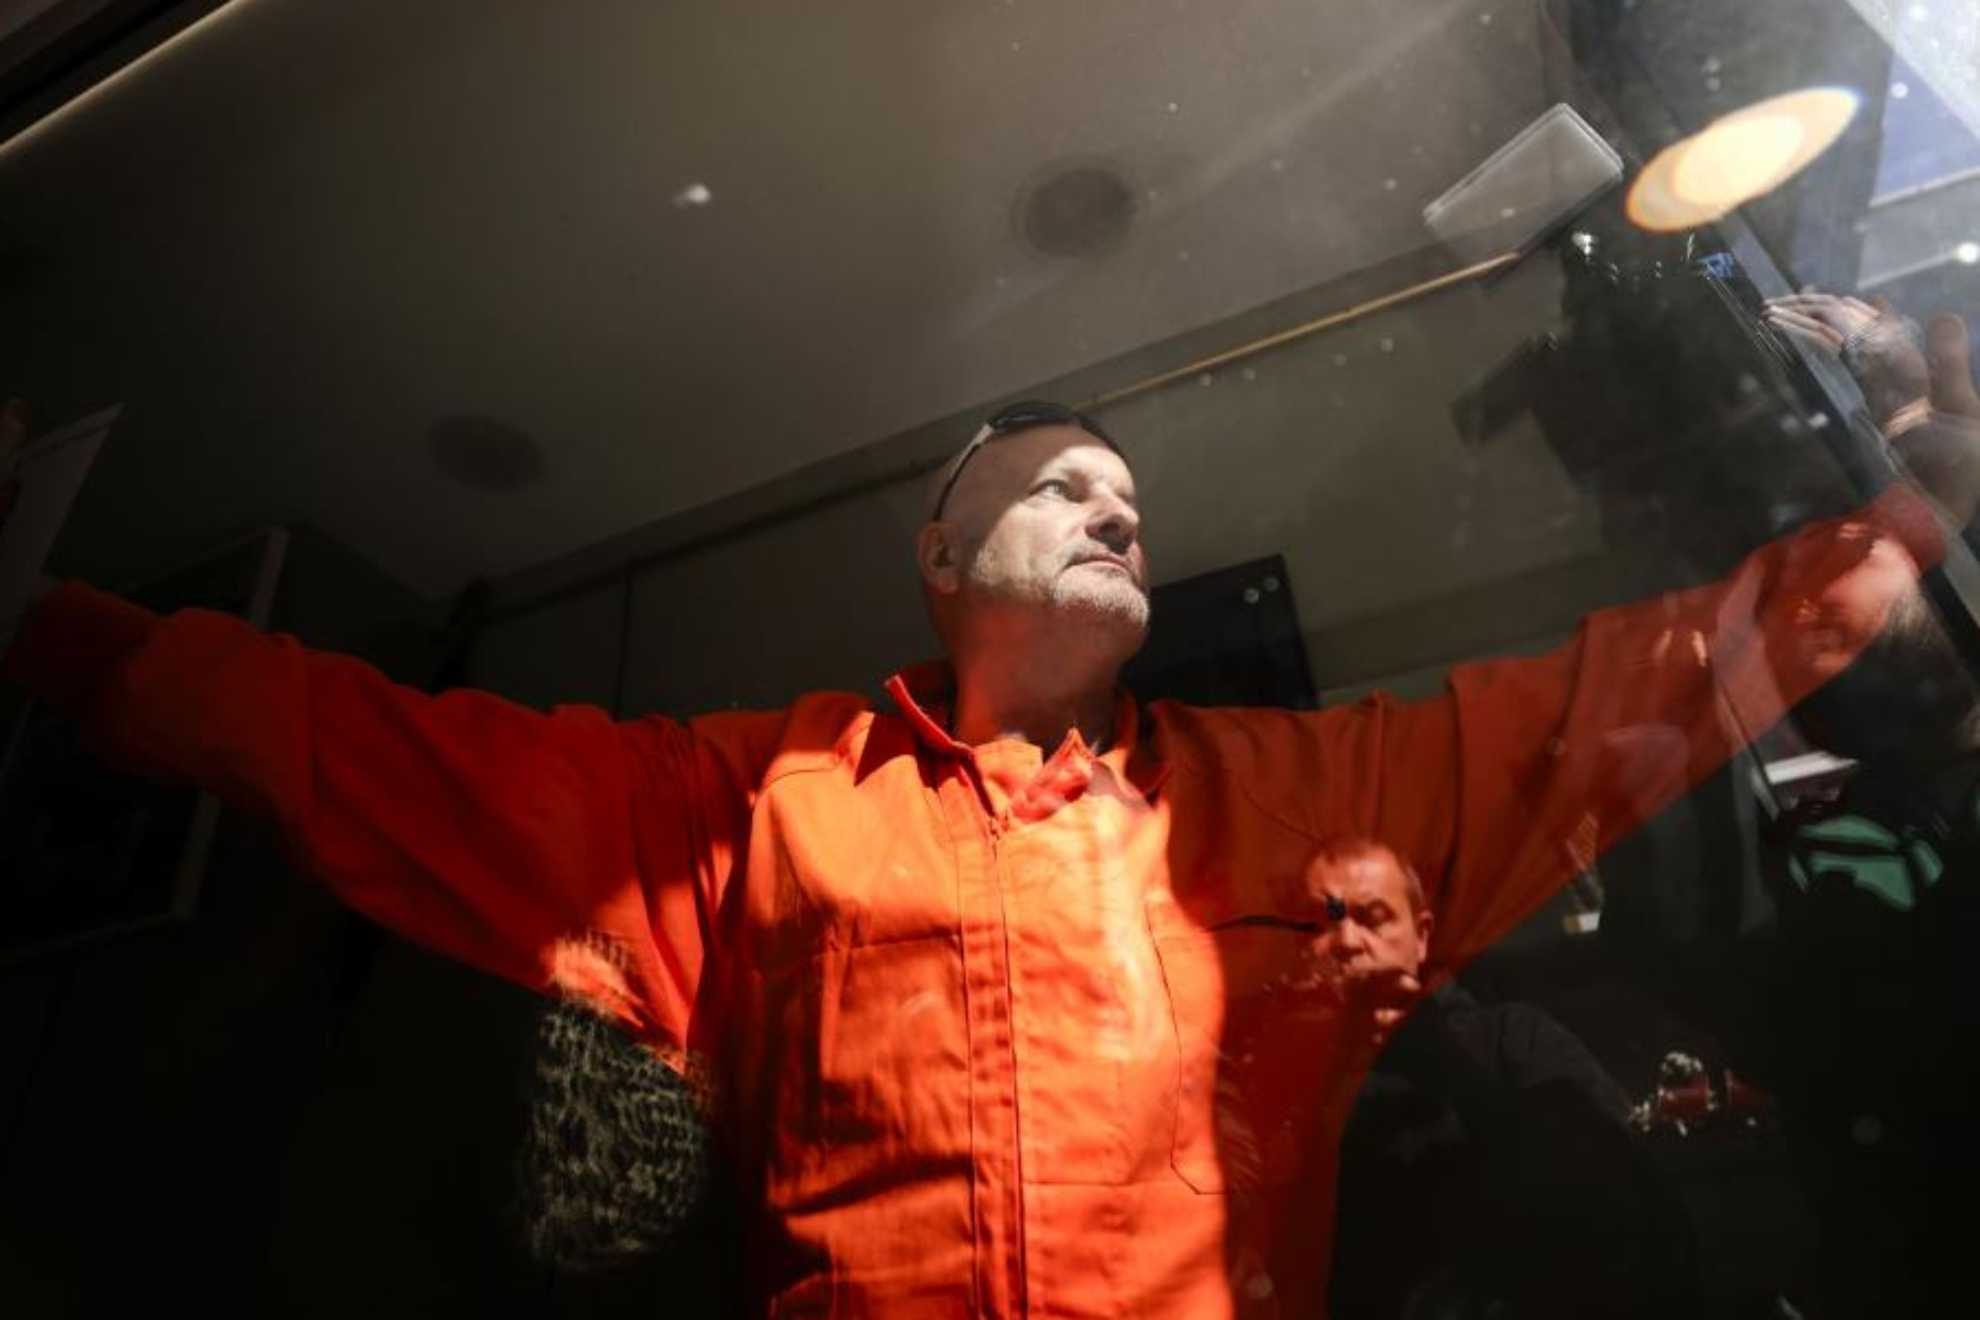 El artista que pint la tumba de Franco se encierra en un escaparate vestido de preso de Guantnamo